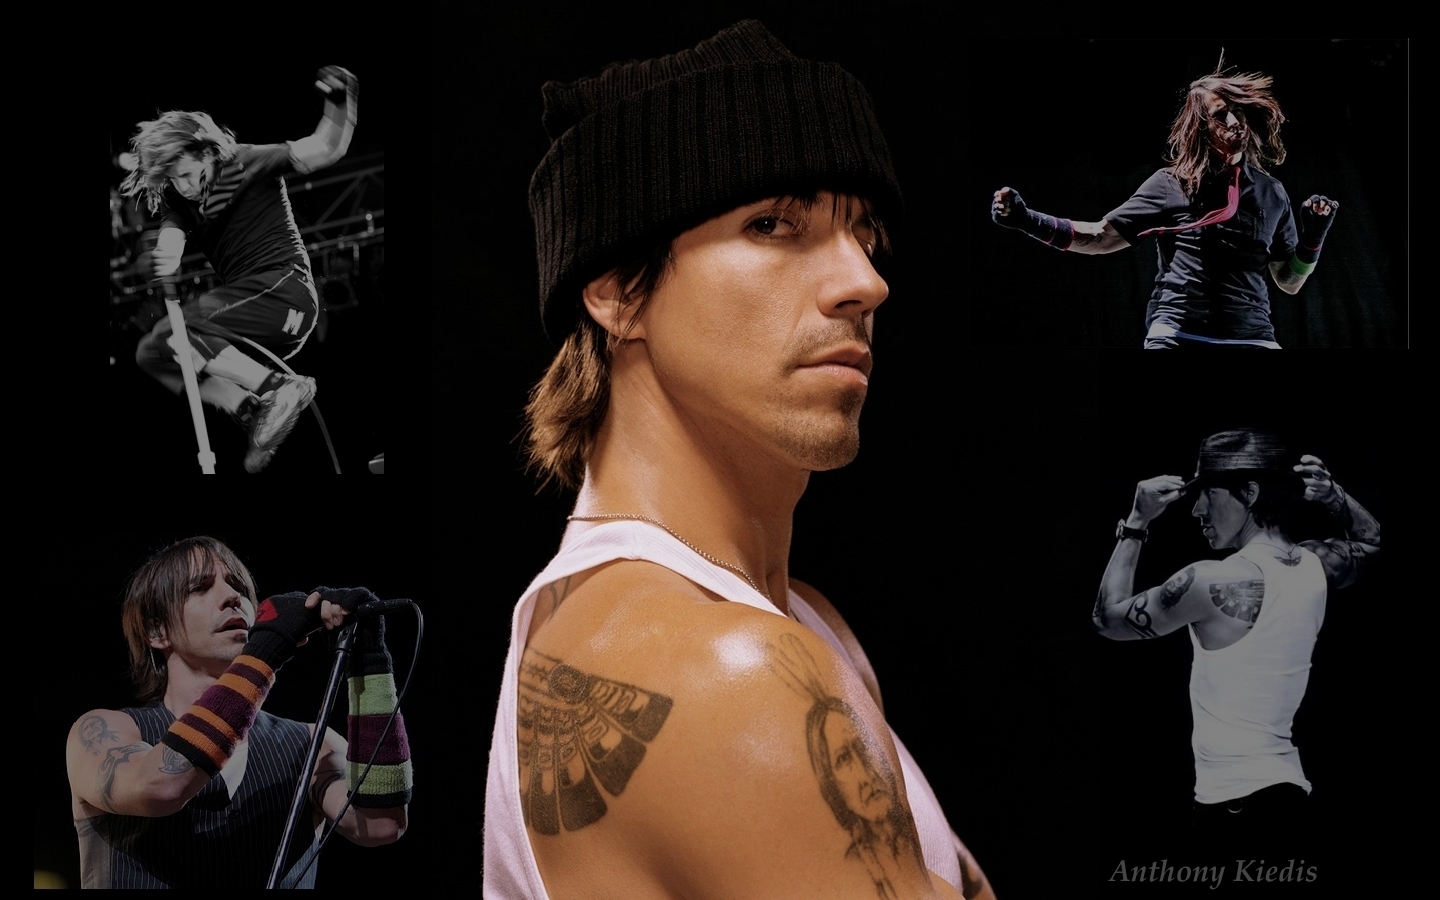 Anthony Kiedis Wallpaper   Anthony Kiedis Wallpaper 15031731 1440x900